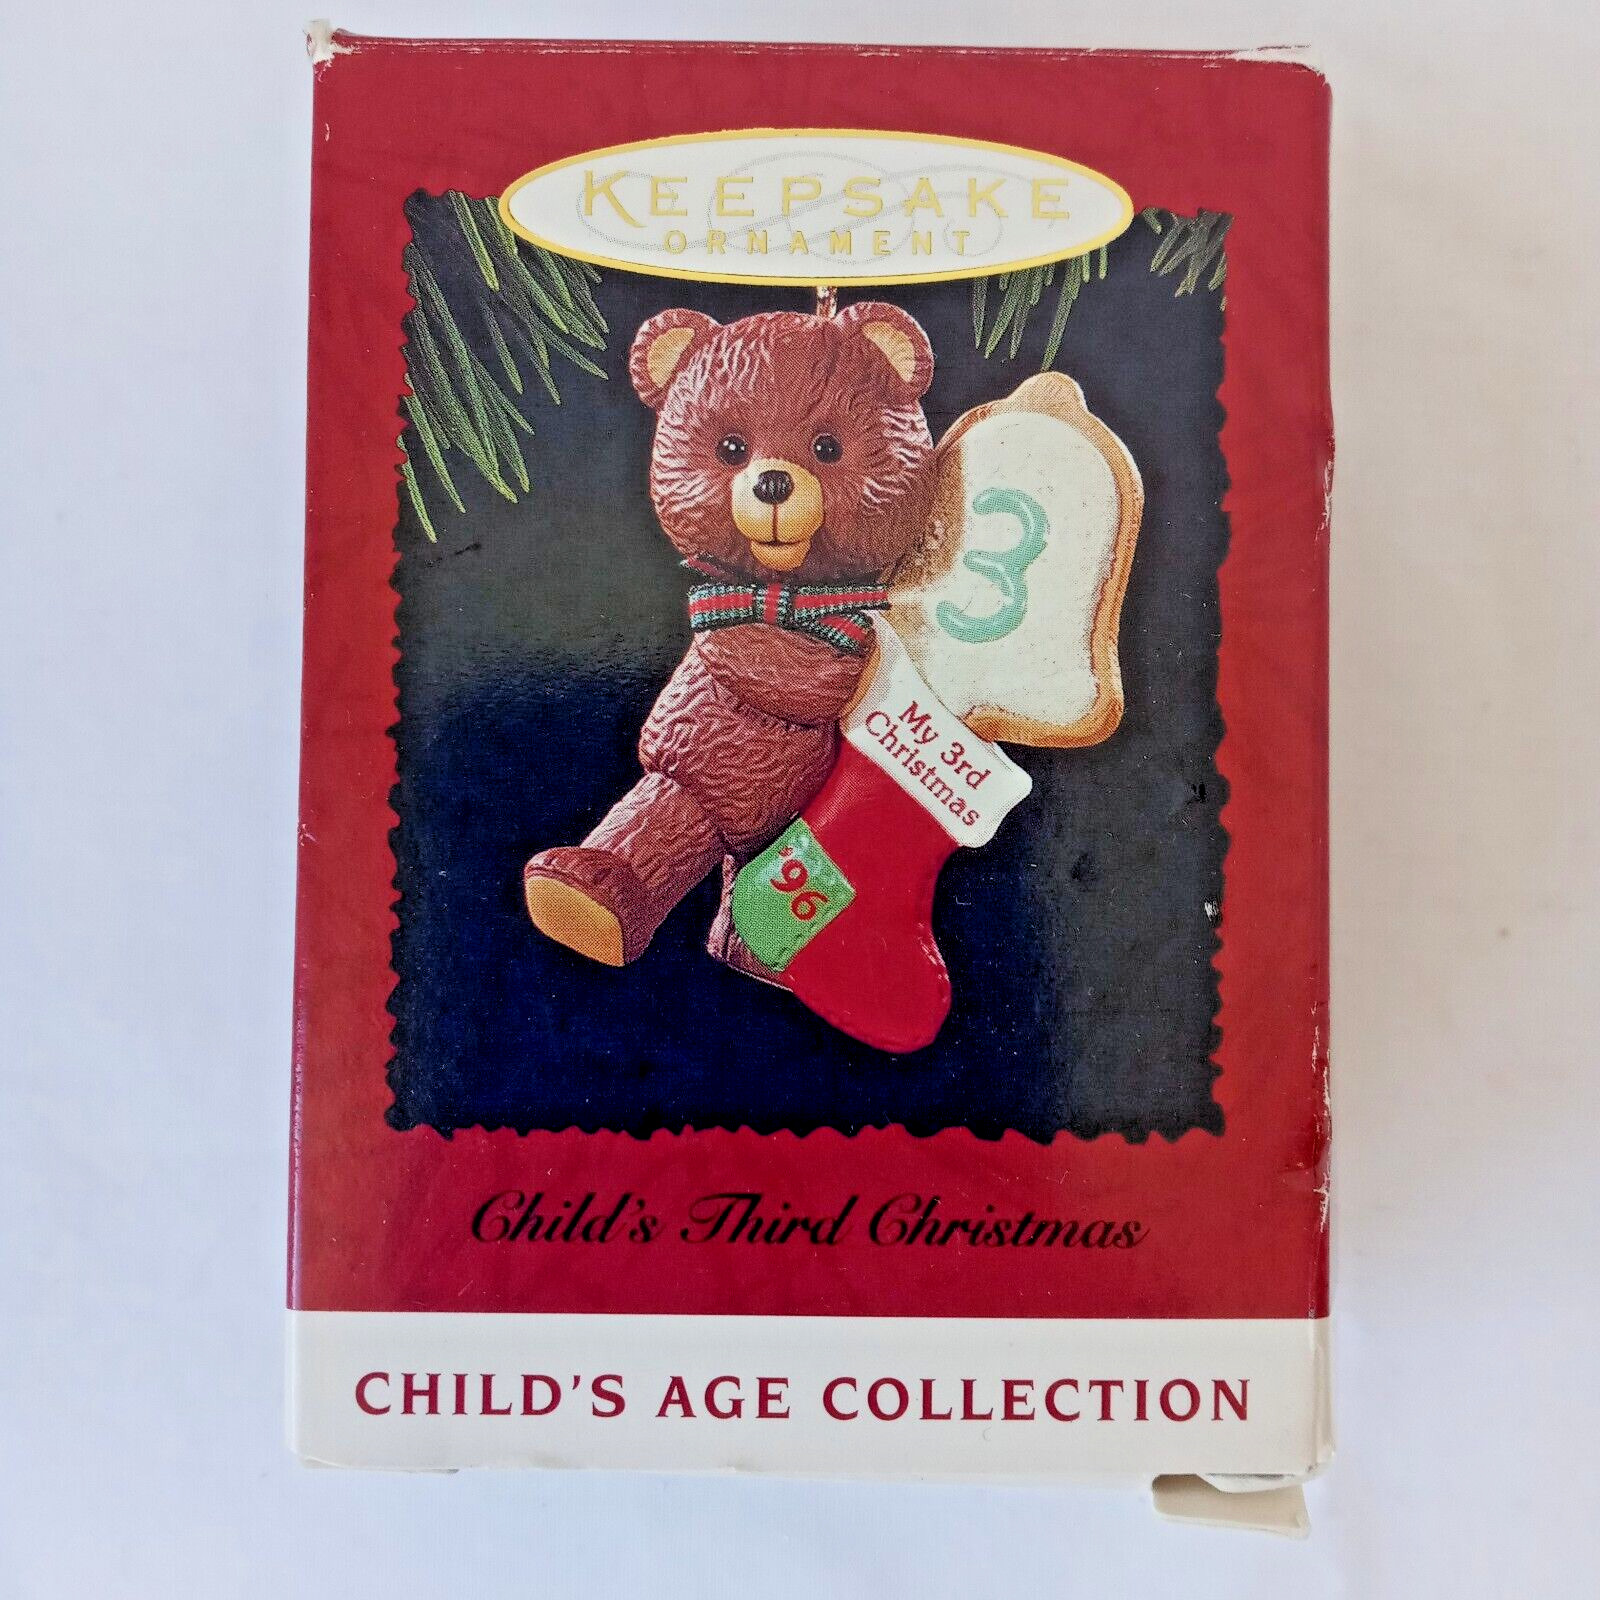 Hallmark Keepsake Childs 3rd Christmas 1996 Ornament Teddy Bear Age Collection